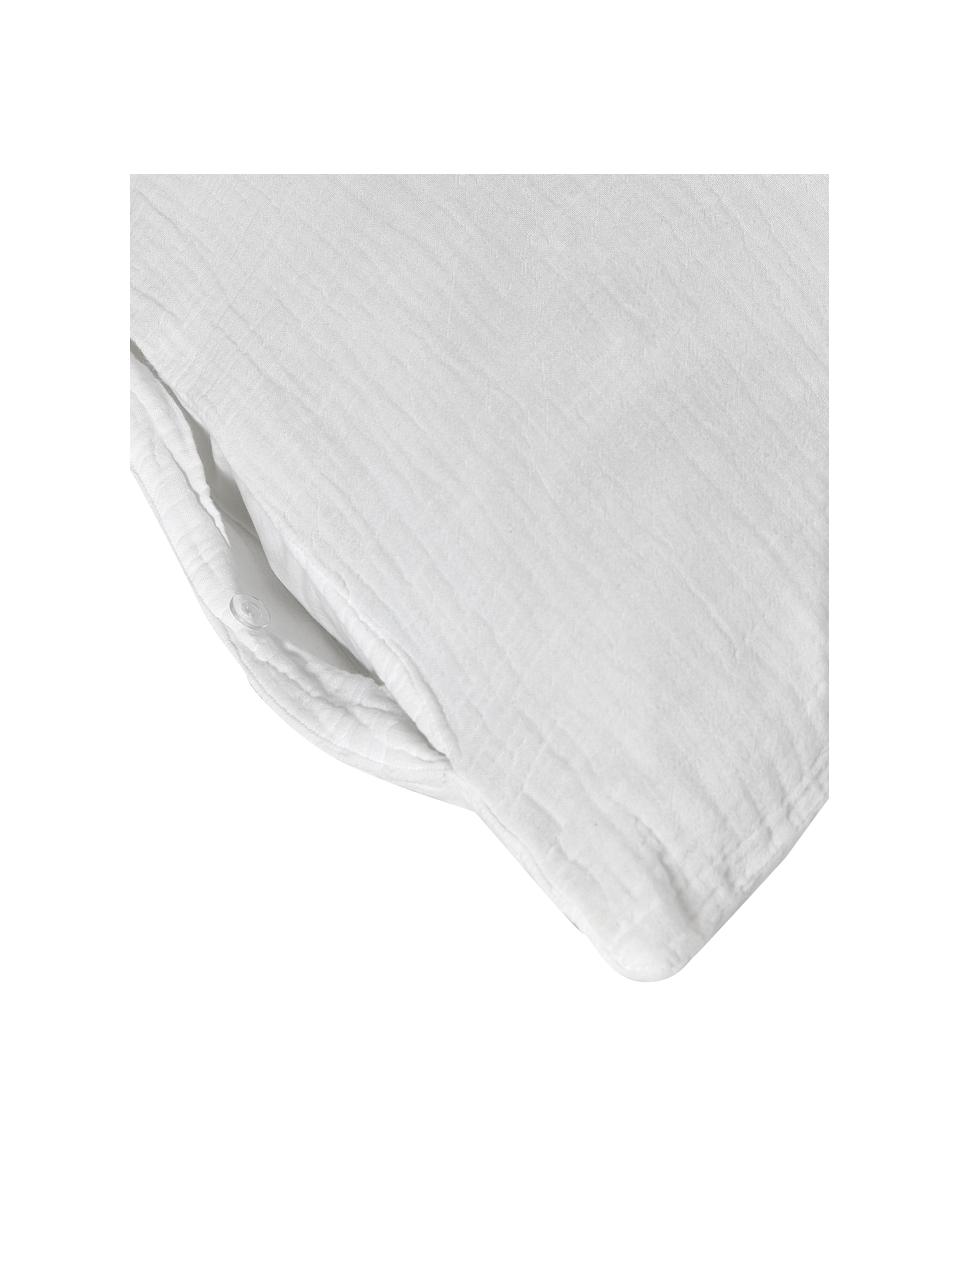 Pościel z muślinu bawełnianego Odile, Biały, 135 x 200 cm + 1 poduszka 80 x 80 cm